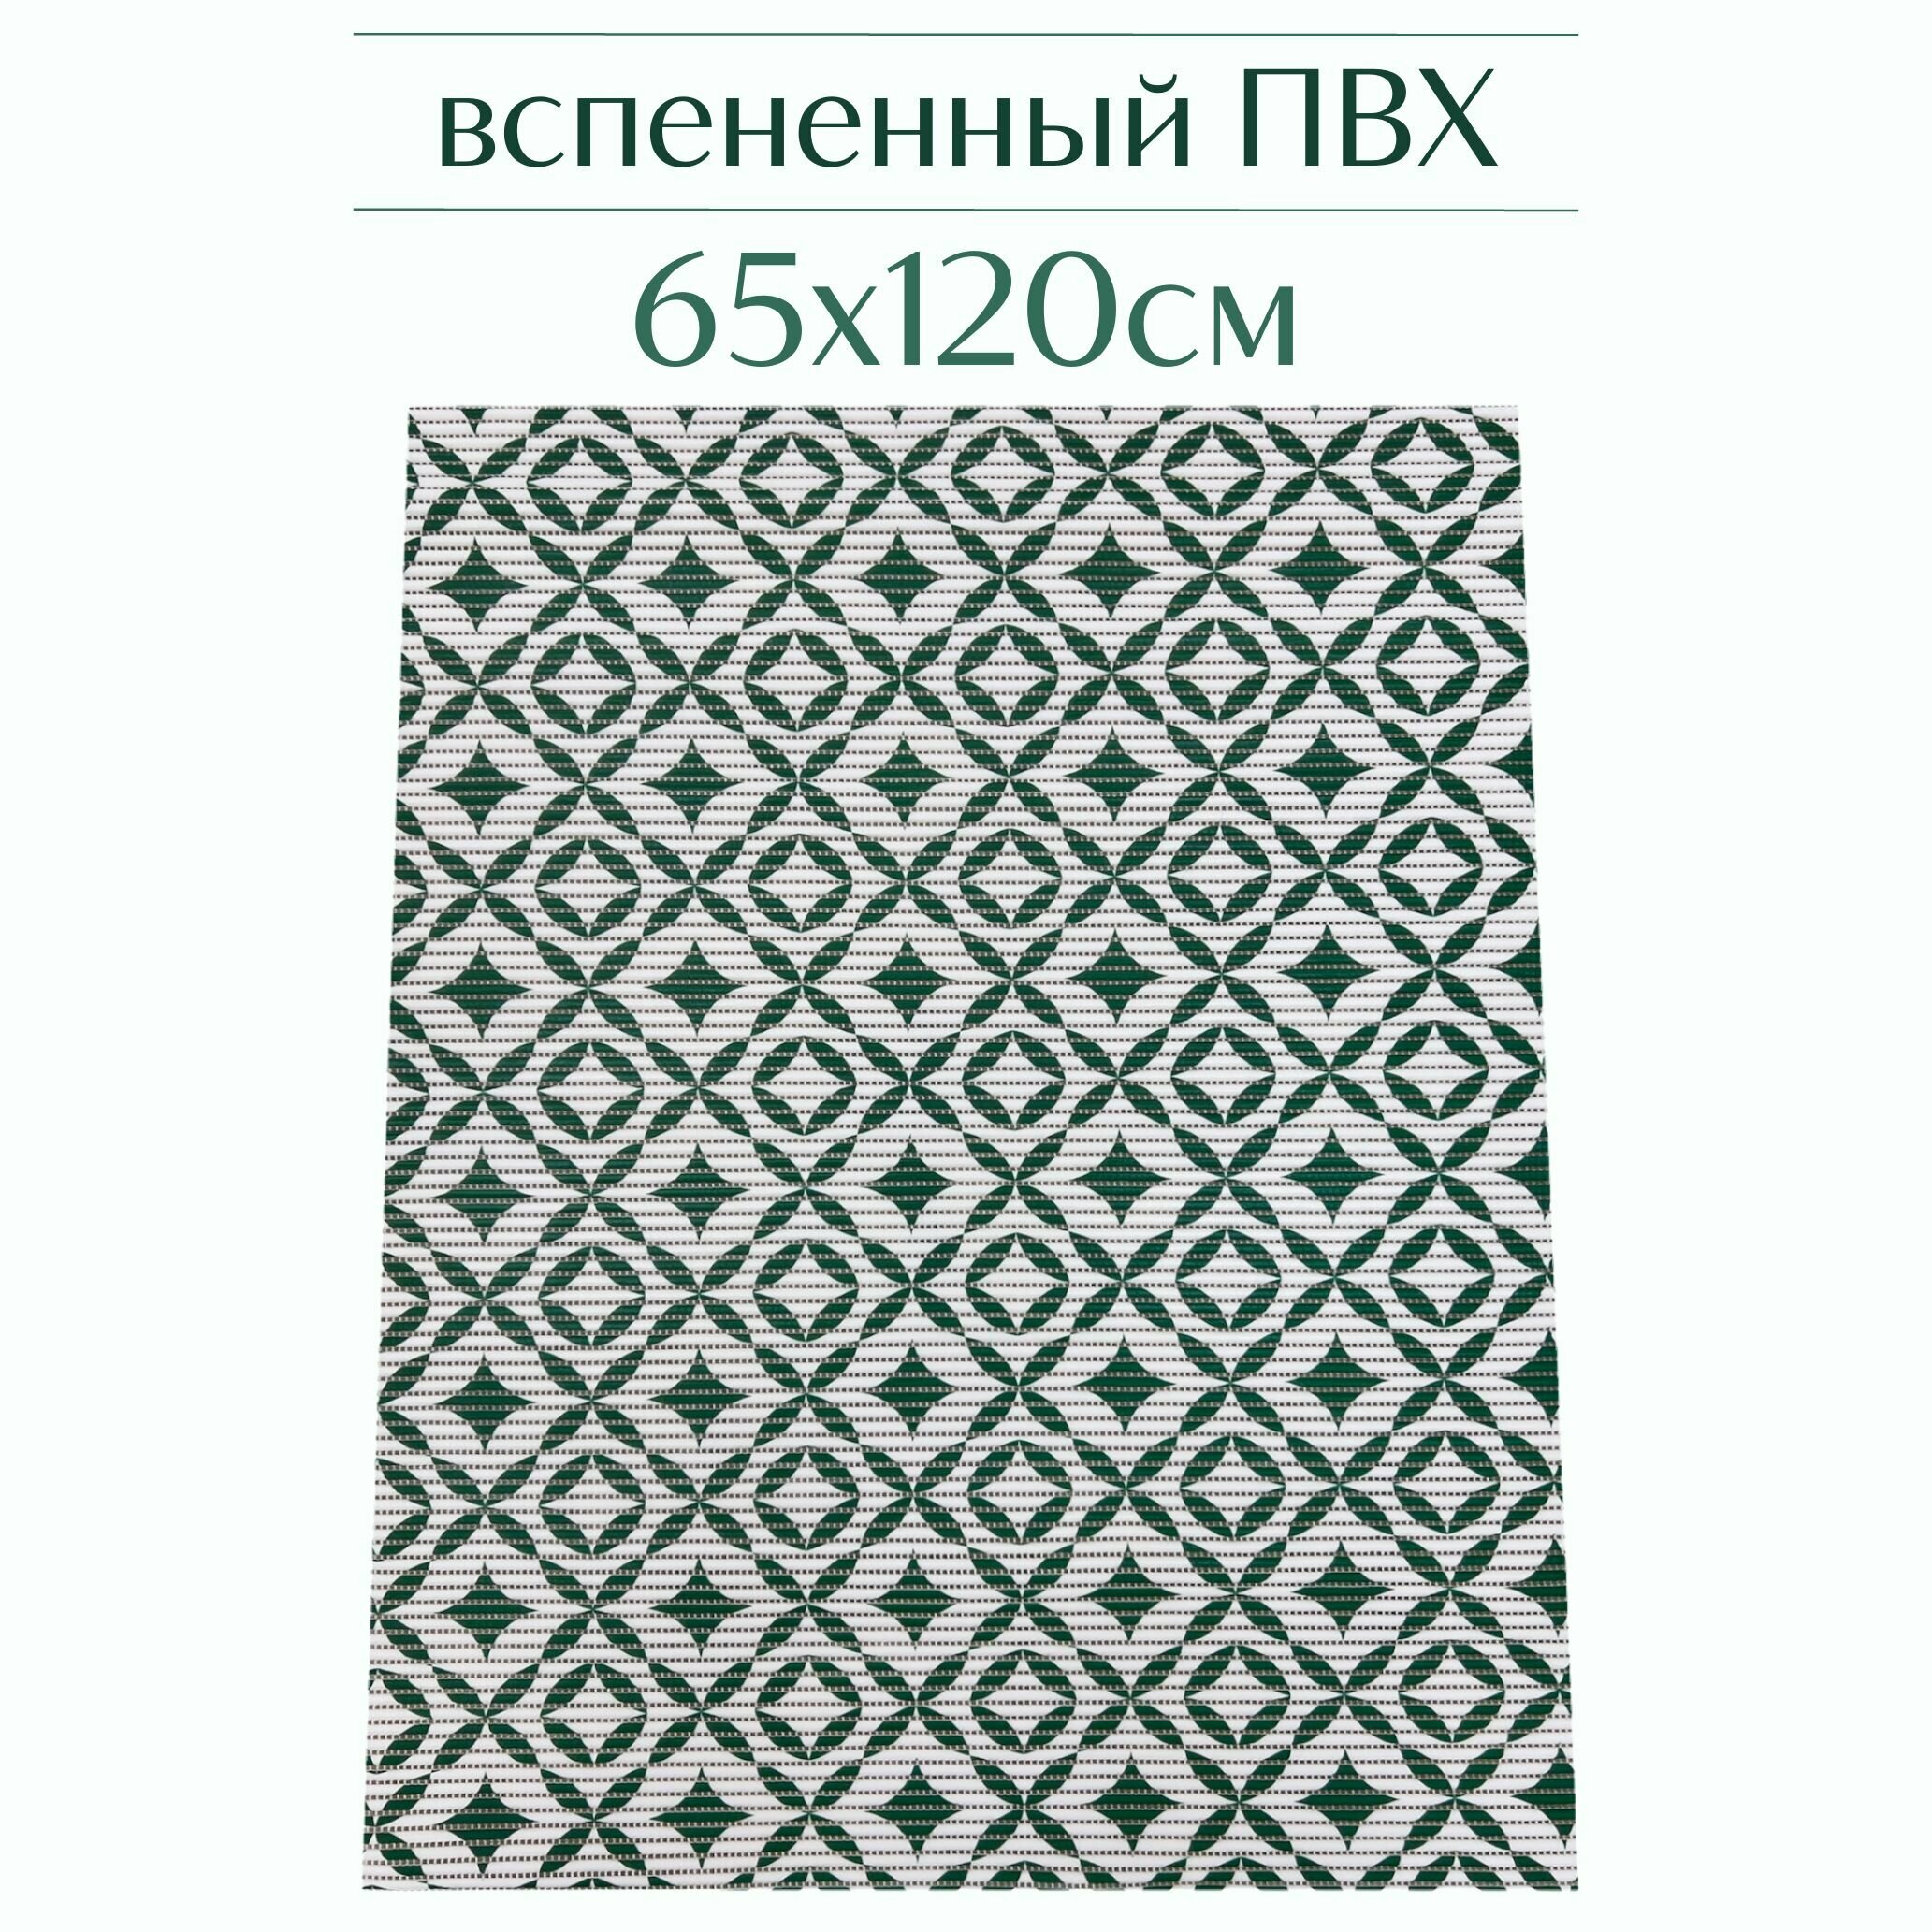 Напольный коврик для ванной из вспененного ПВХ 65x120 см, зеленый/белый, с рисунком